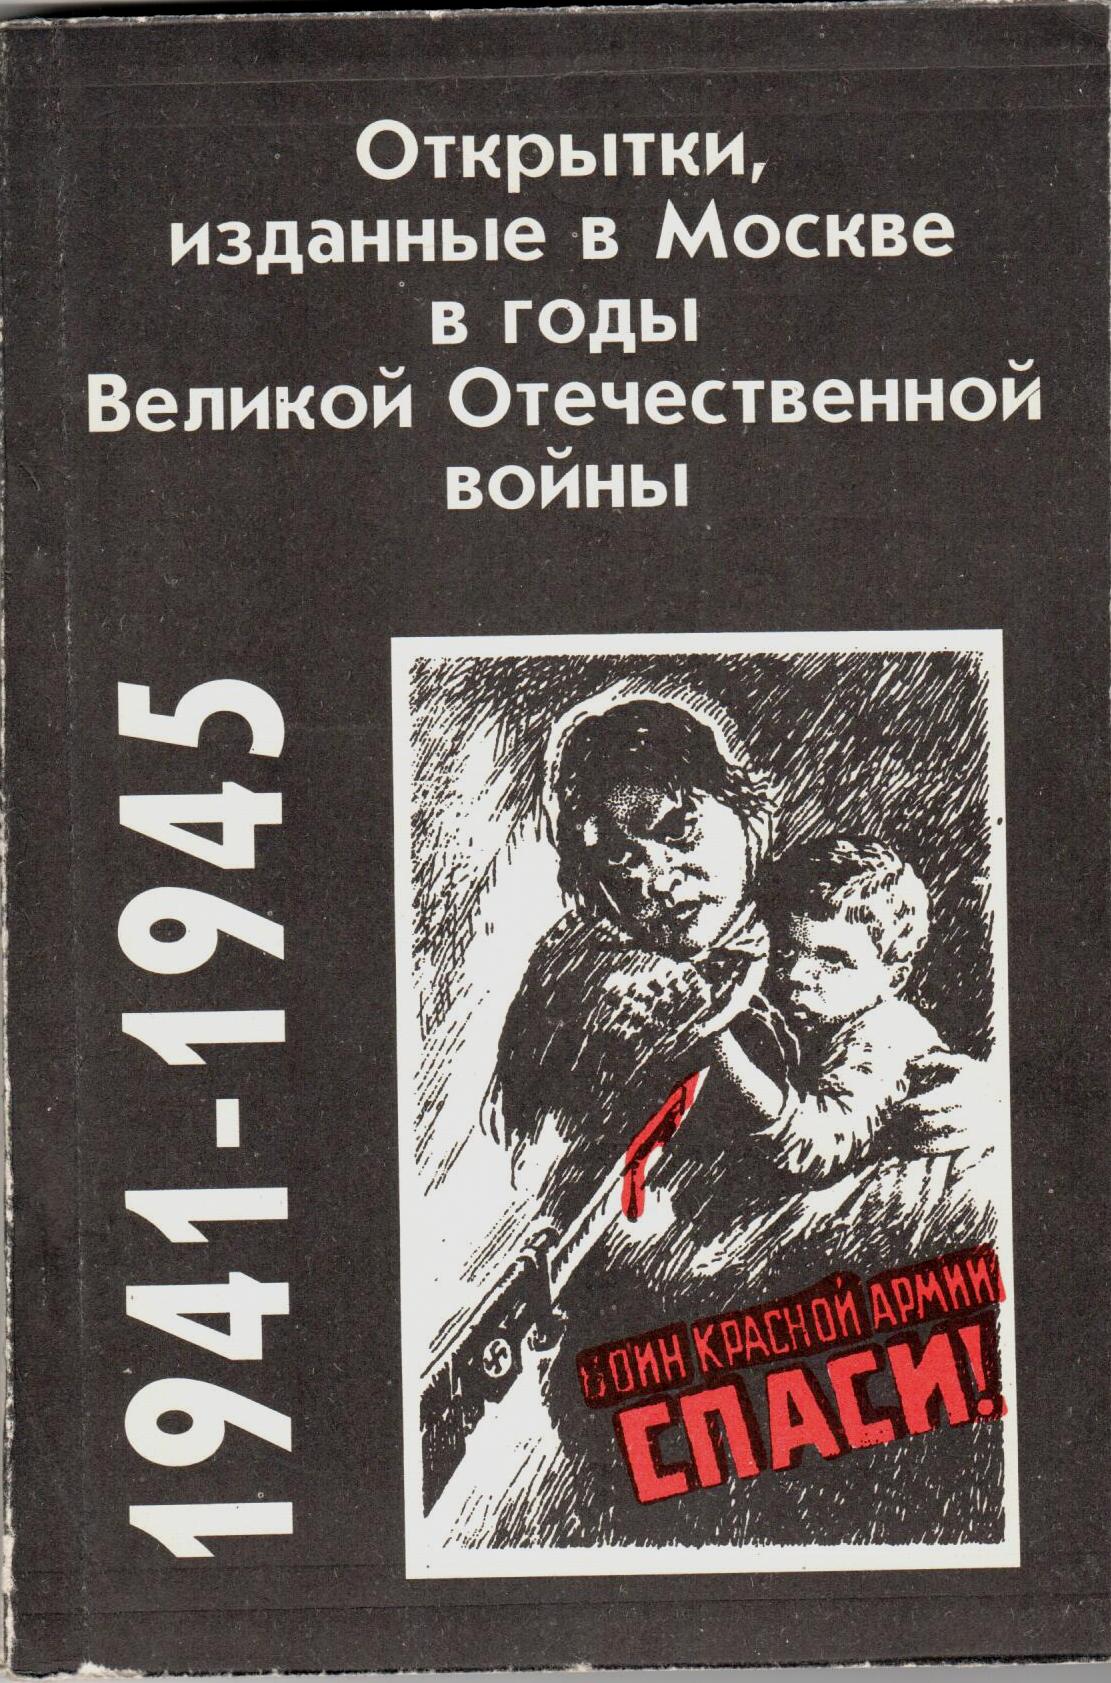 Артемьев В.И., Забочень М.С. Открытки, изданные в годы Великой Отечественной войны 1941-1945 гг.